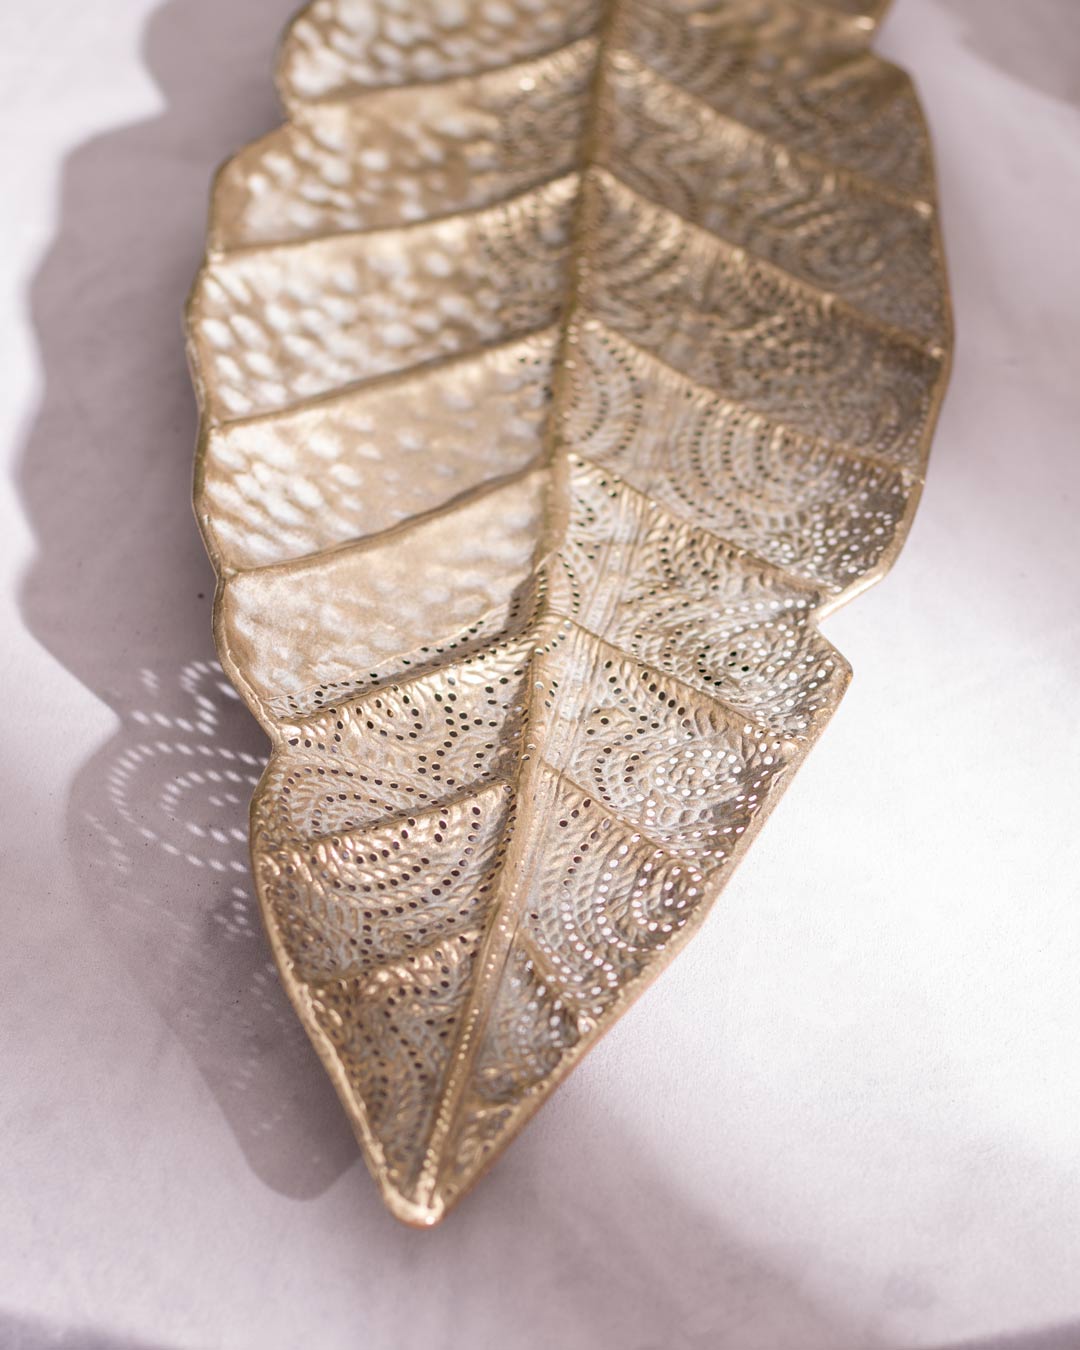 Close-up of leaf detail on metal platter